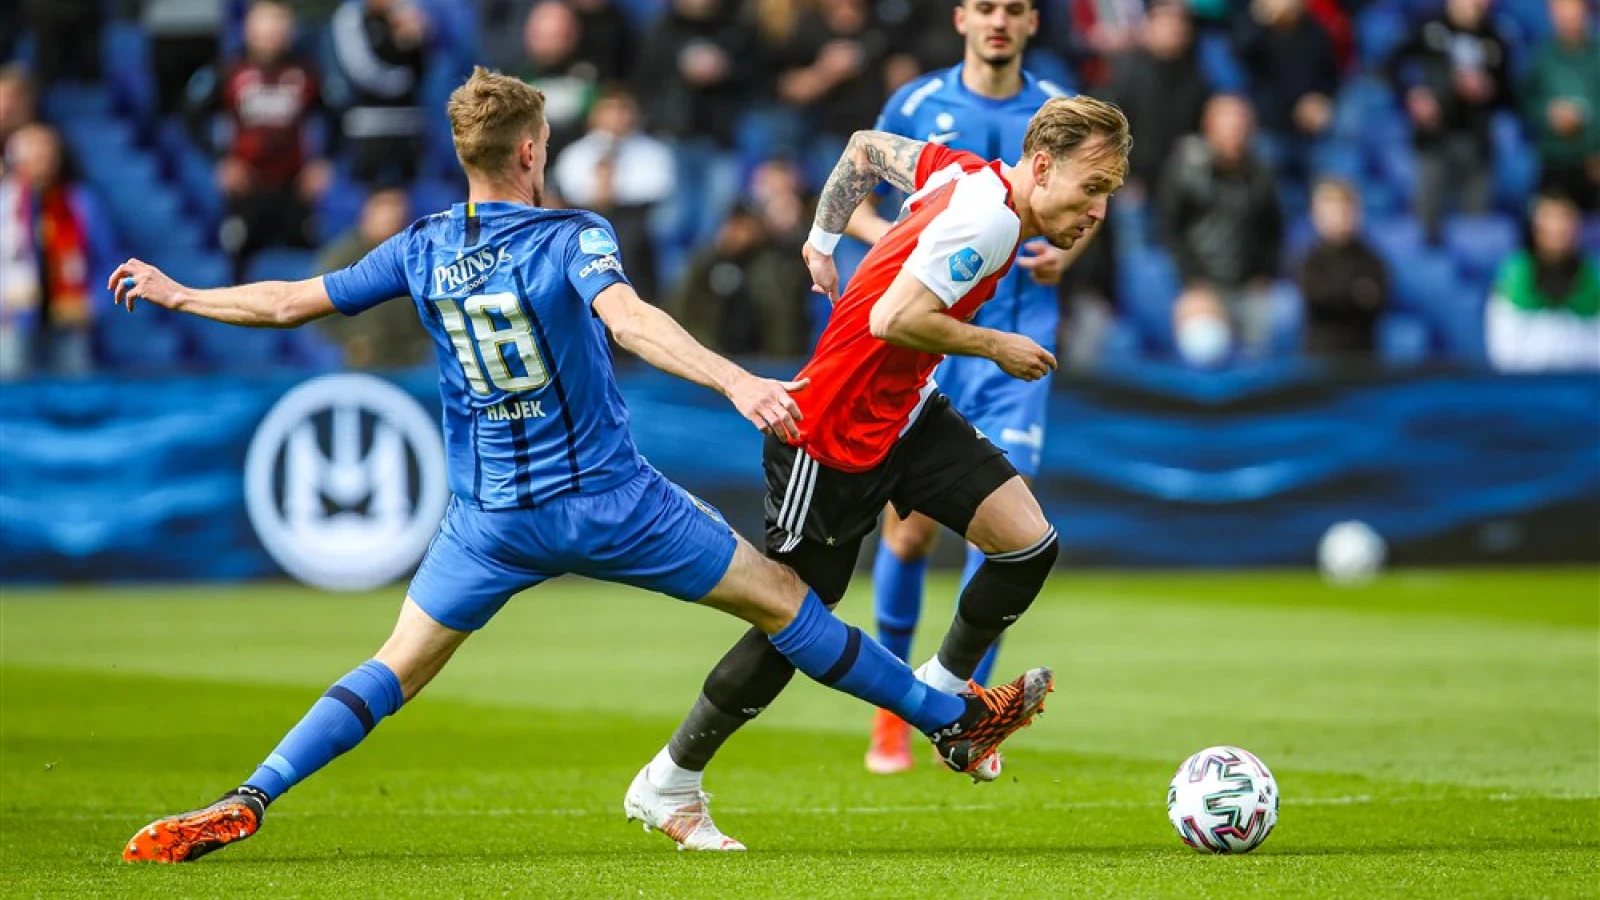 LIVE | Feyenoord - Vitesse 0-0 | Einde wedstrijd